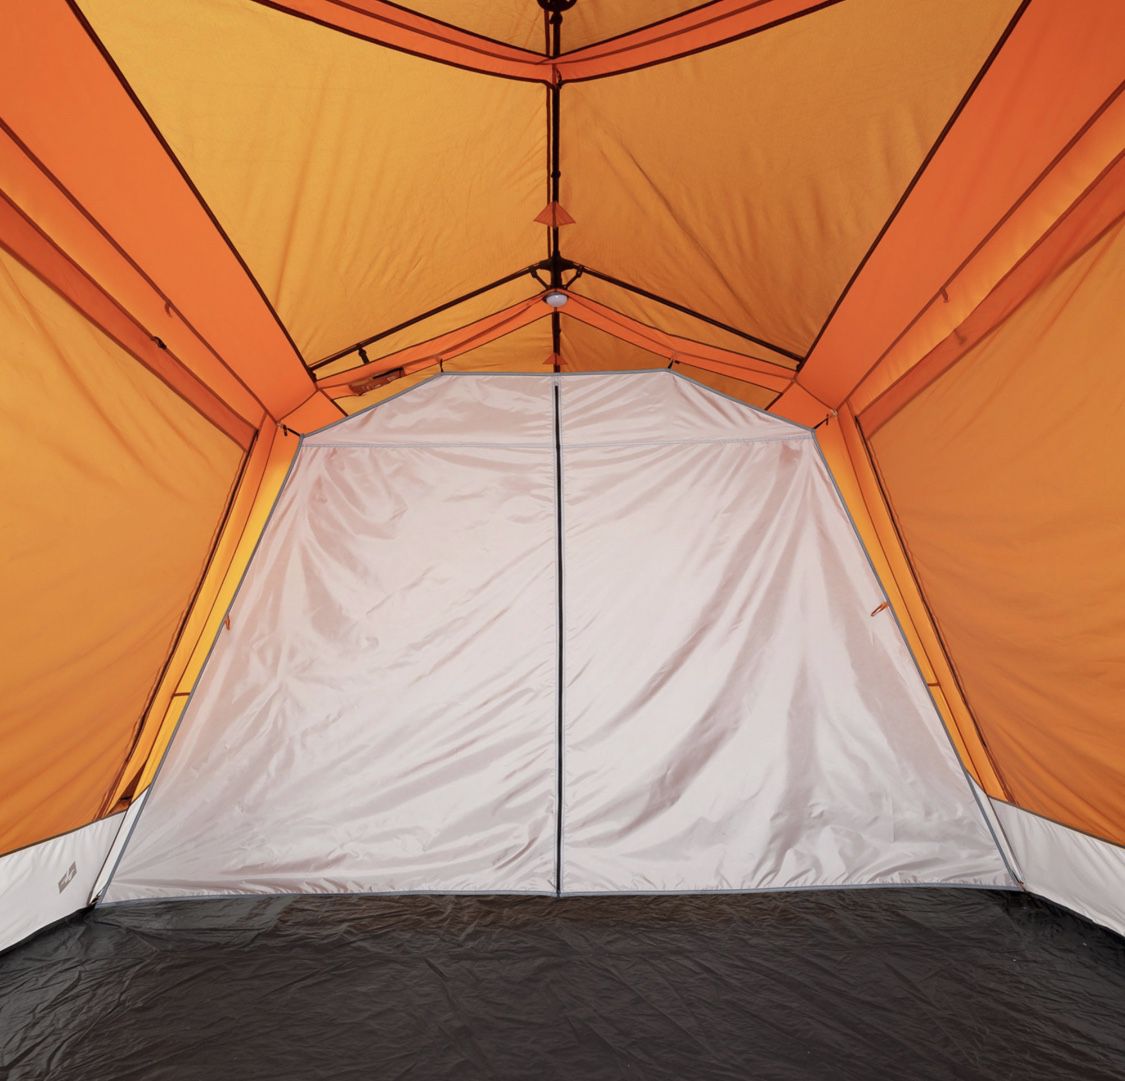 Member's Mark 12-personne instantané cabine tente avec lumière DEL Hub 